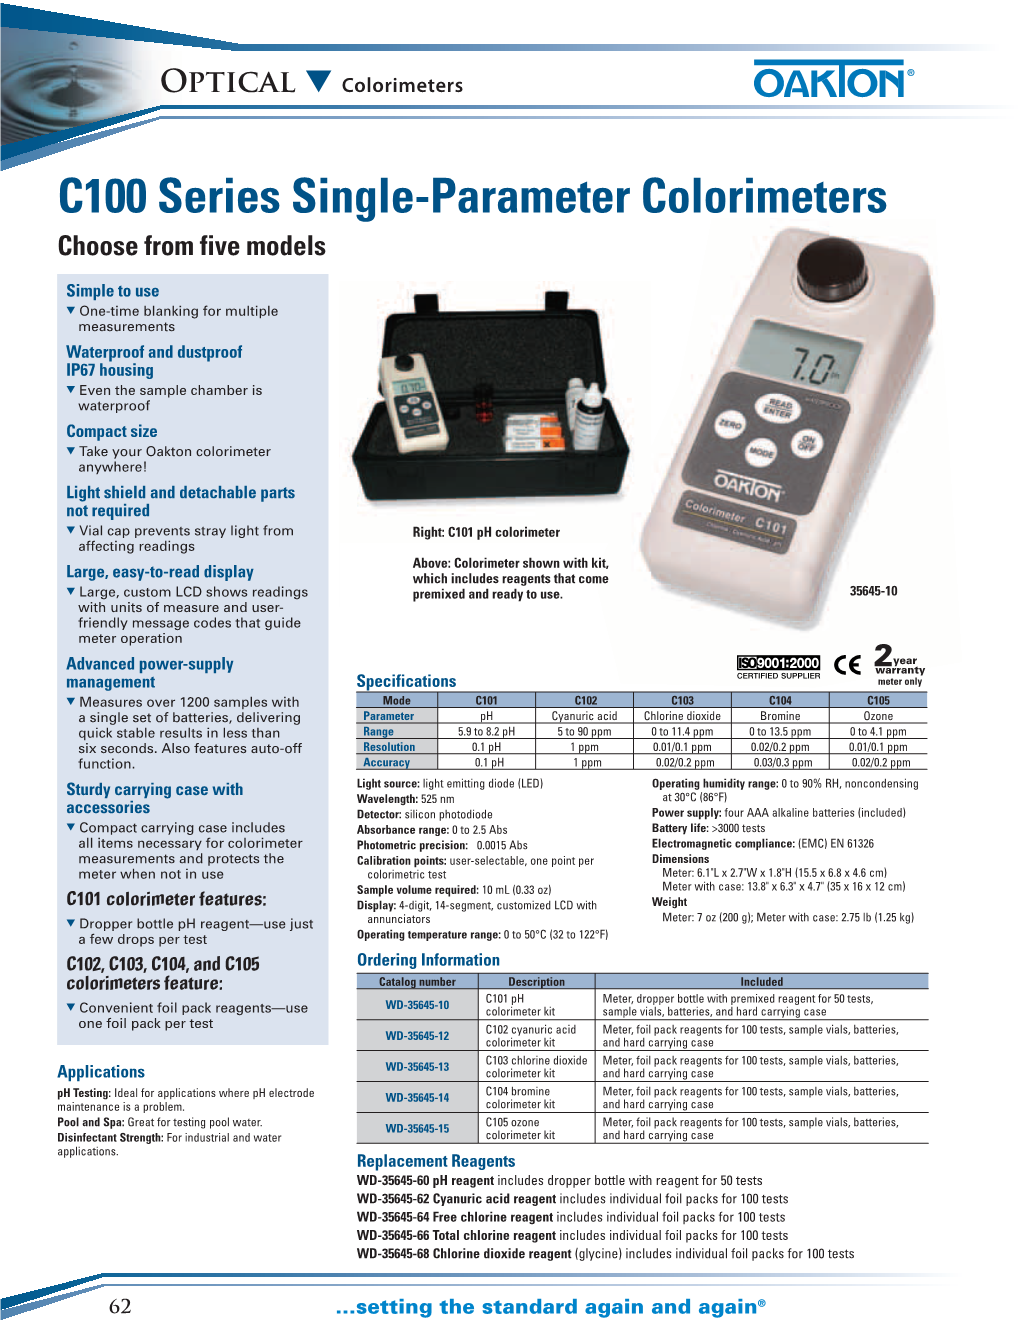 C100 Series Single-Parameter Colorimeters Choose from Five Models